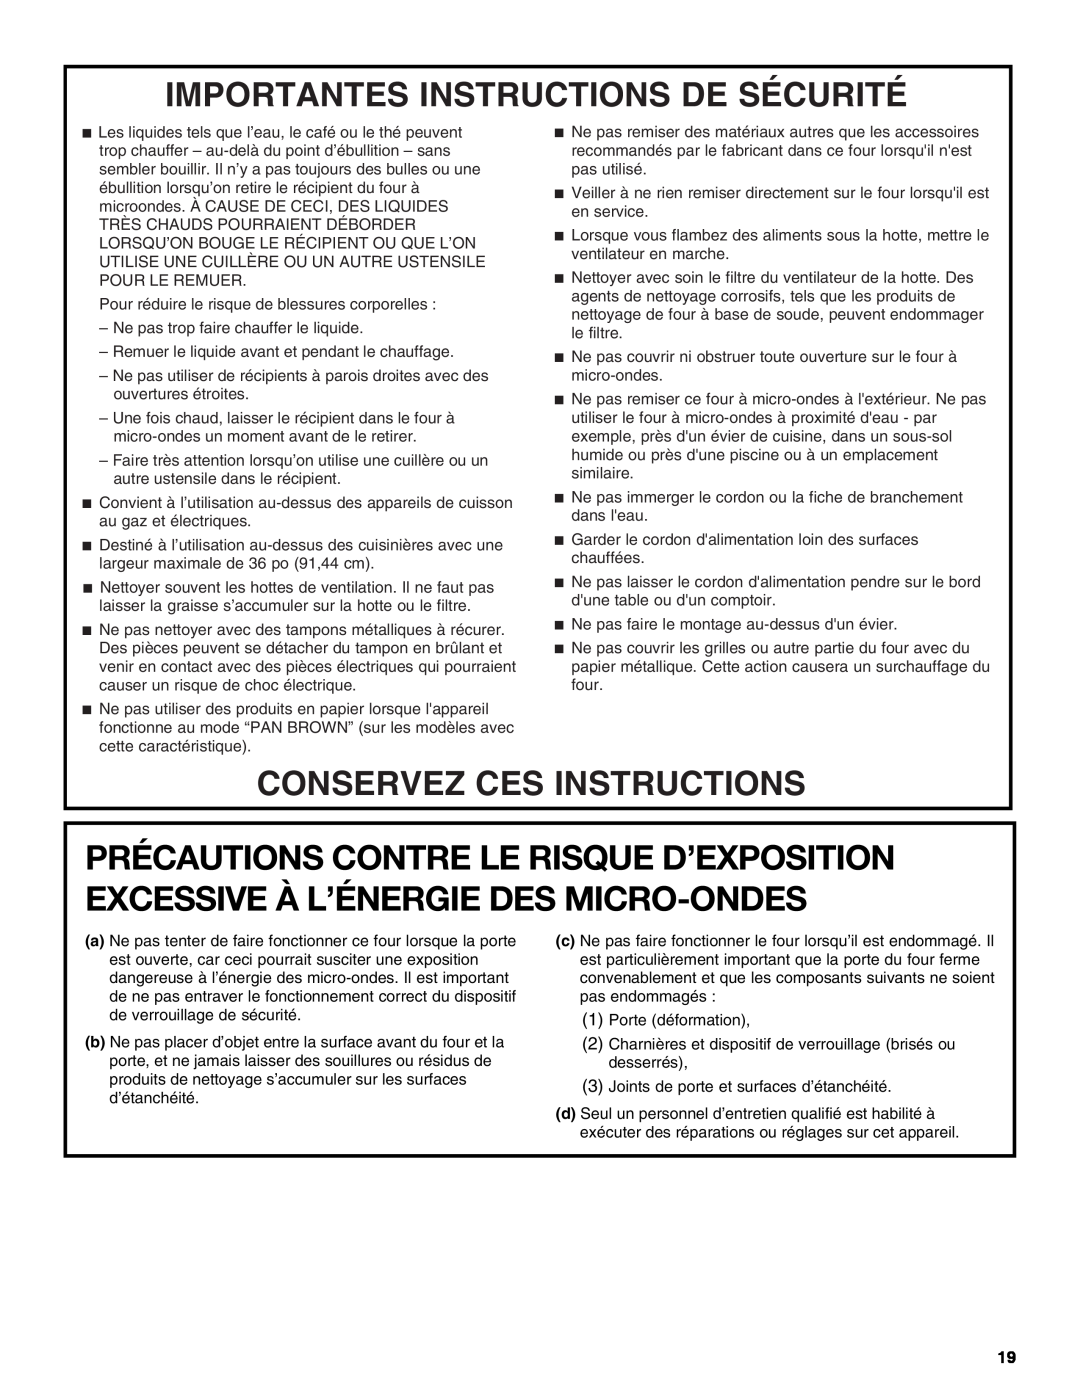 Whirlpool YKHMS1850S manual Importantes Instructions De Sécurité, Conservez Ces Instructions 